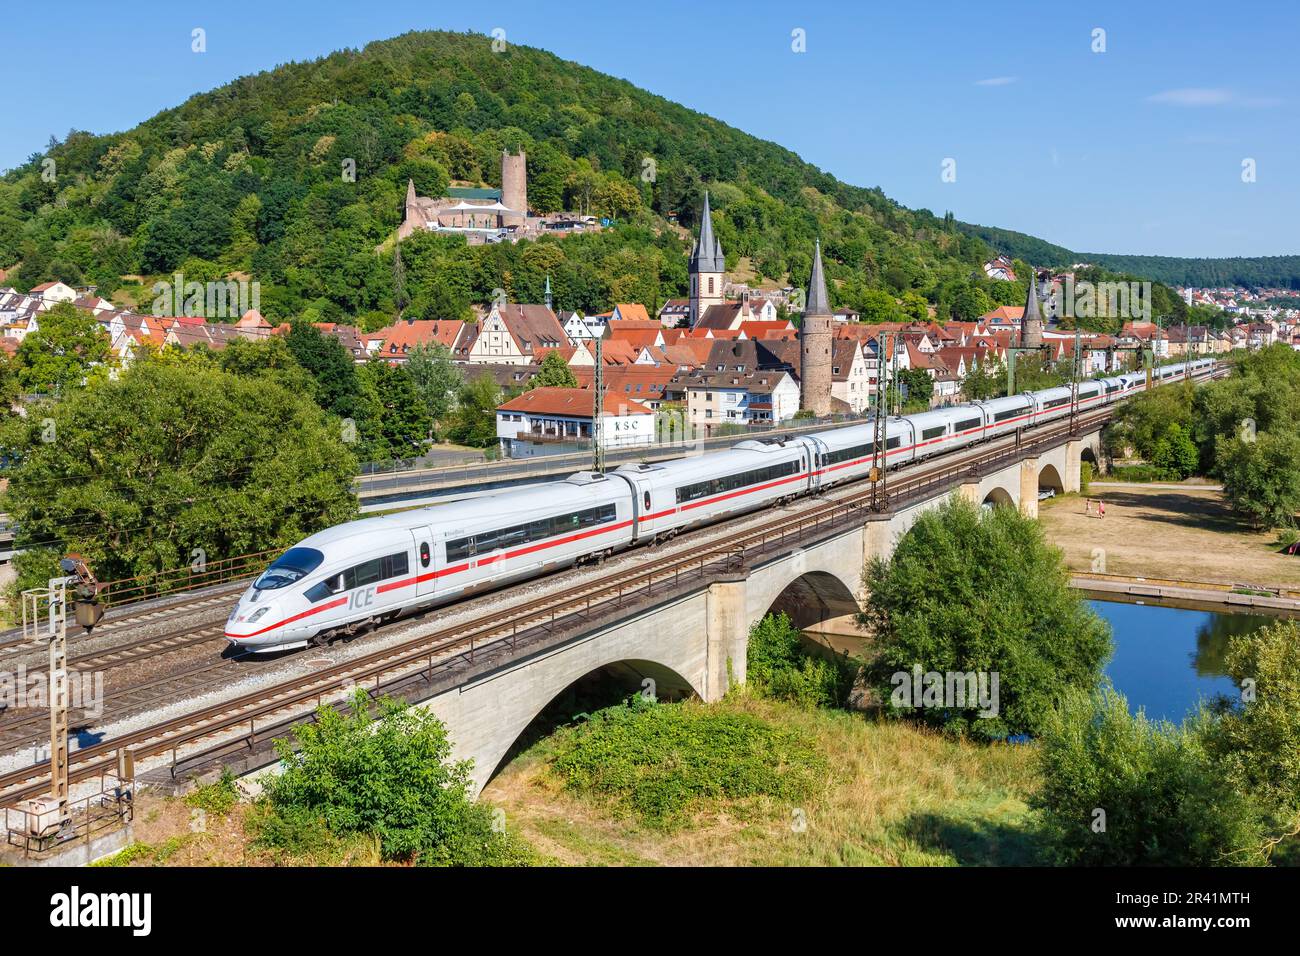 ICE 3 high speed train train of Deutsche Bahn DB in GemÃ¼nden am Main, Germany Stock Photo